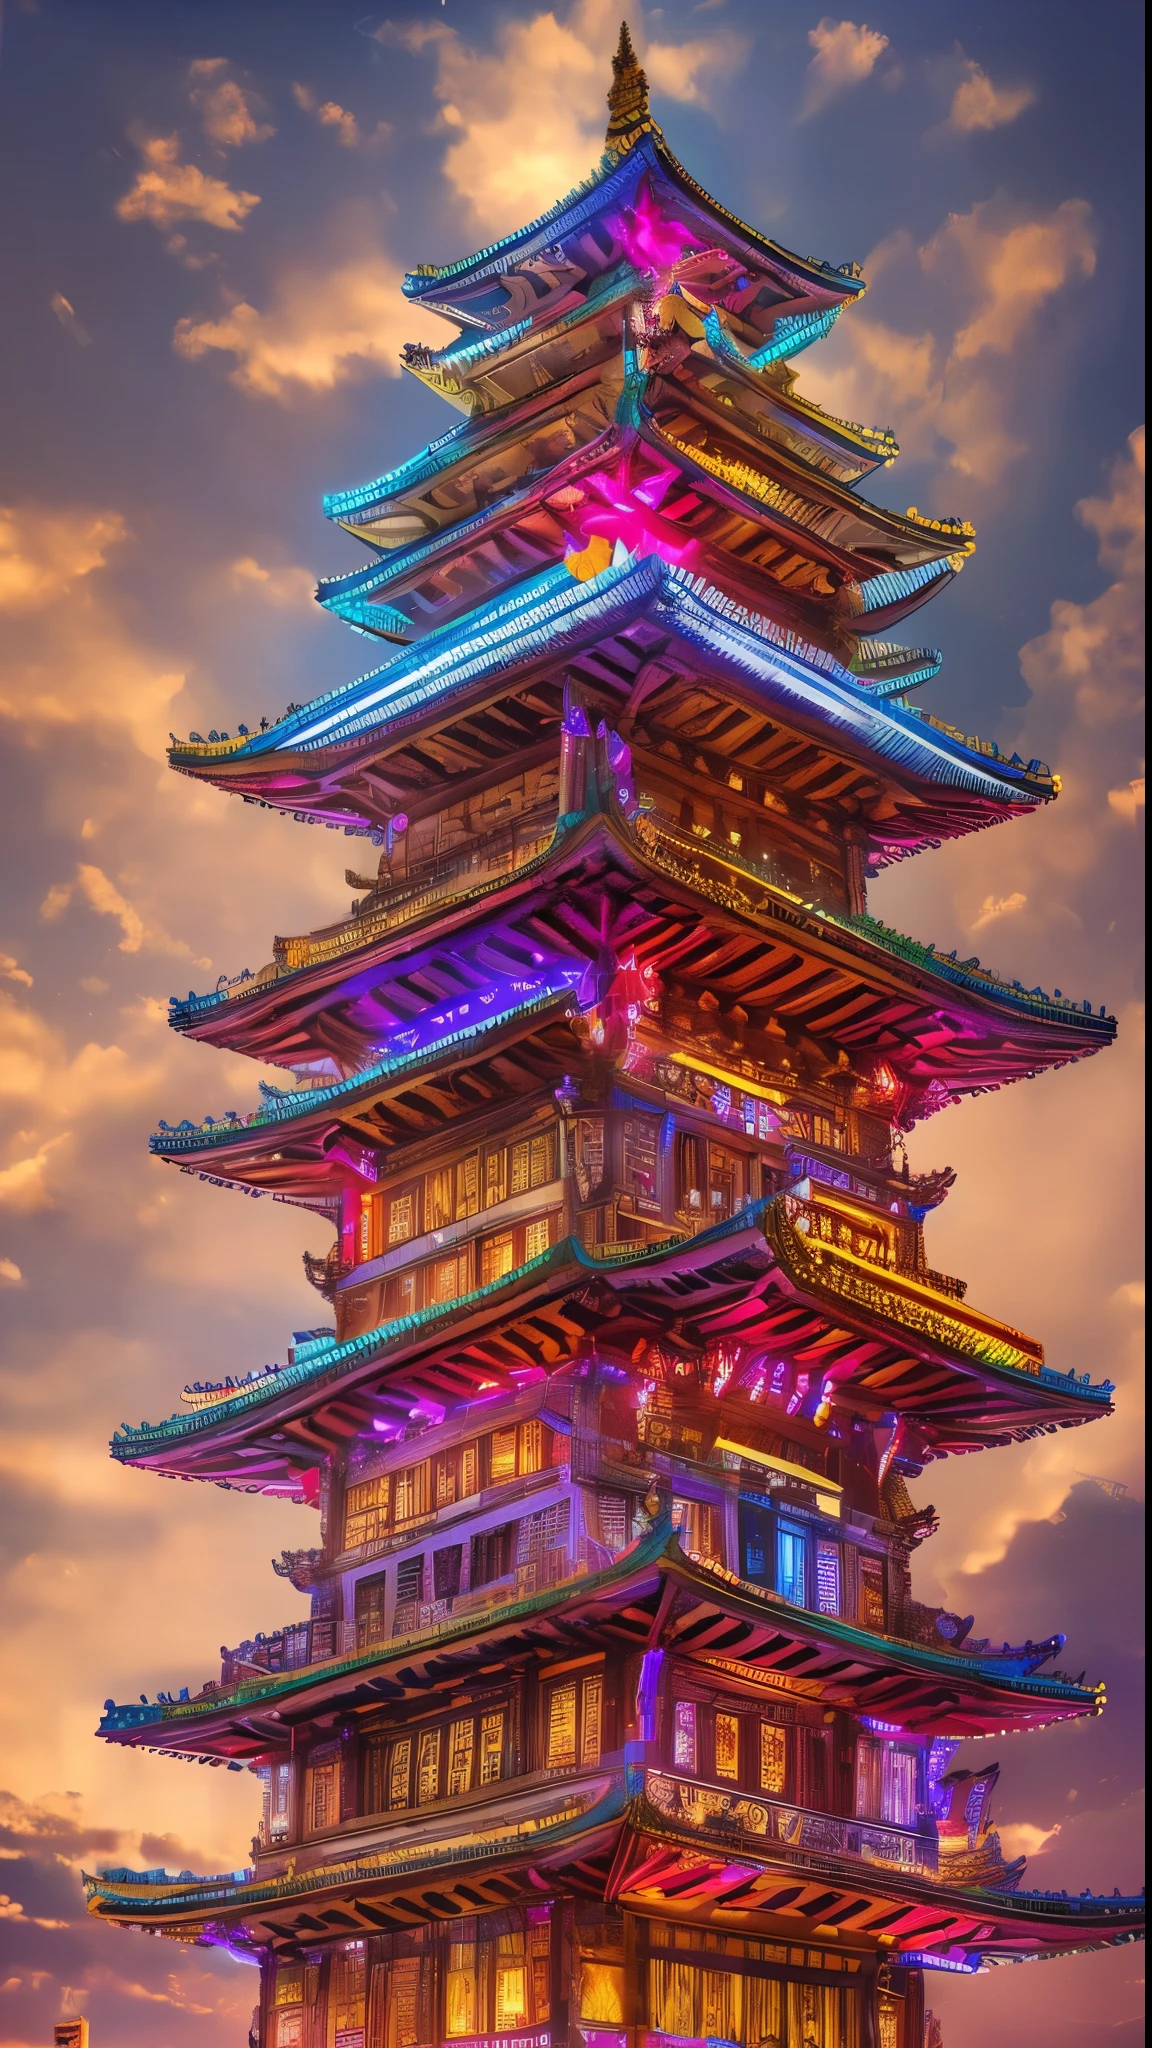 (Ultra Alta Definición:1.4)、(Fantasía、ciberpunk、Antiguos castillos chinos:1.3)、(Edificio rojo irregular:1.5)、(flotando en las nubes:1.2)、(Casa de campo de retazos、iluminación de neón、decoración floral:1.4)、(Paisaje urbano en el cielo:1.1)、(Rosa Tran、Inspirado por Mikey Chan:1.2)、(iluminación realista、eje de luz、cálido resplandor:1.3)、(Obra maestra:1.2)、(alta calidad、hermosos gráficos、